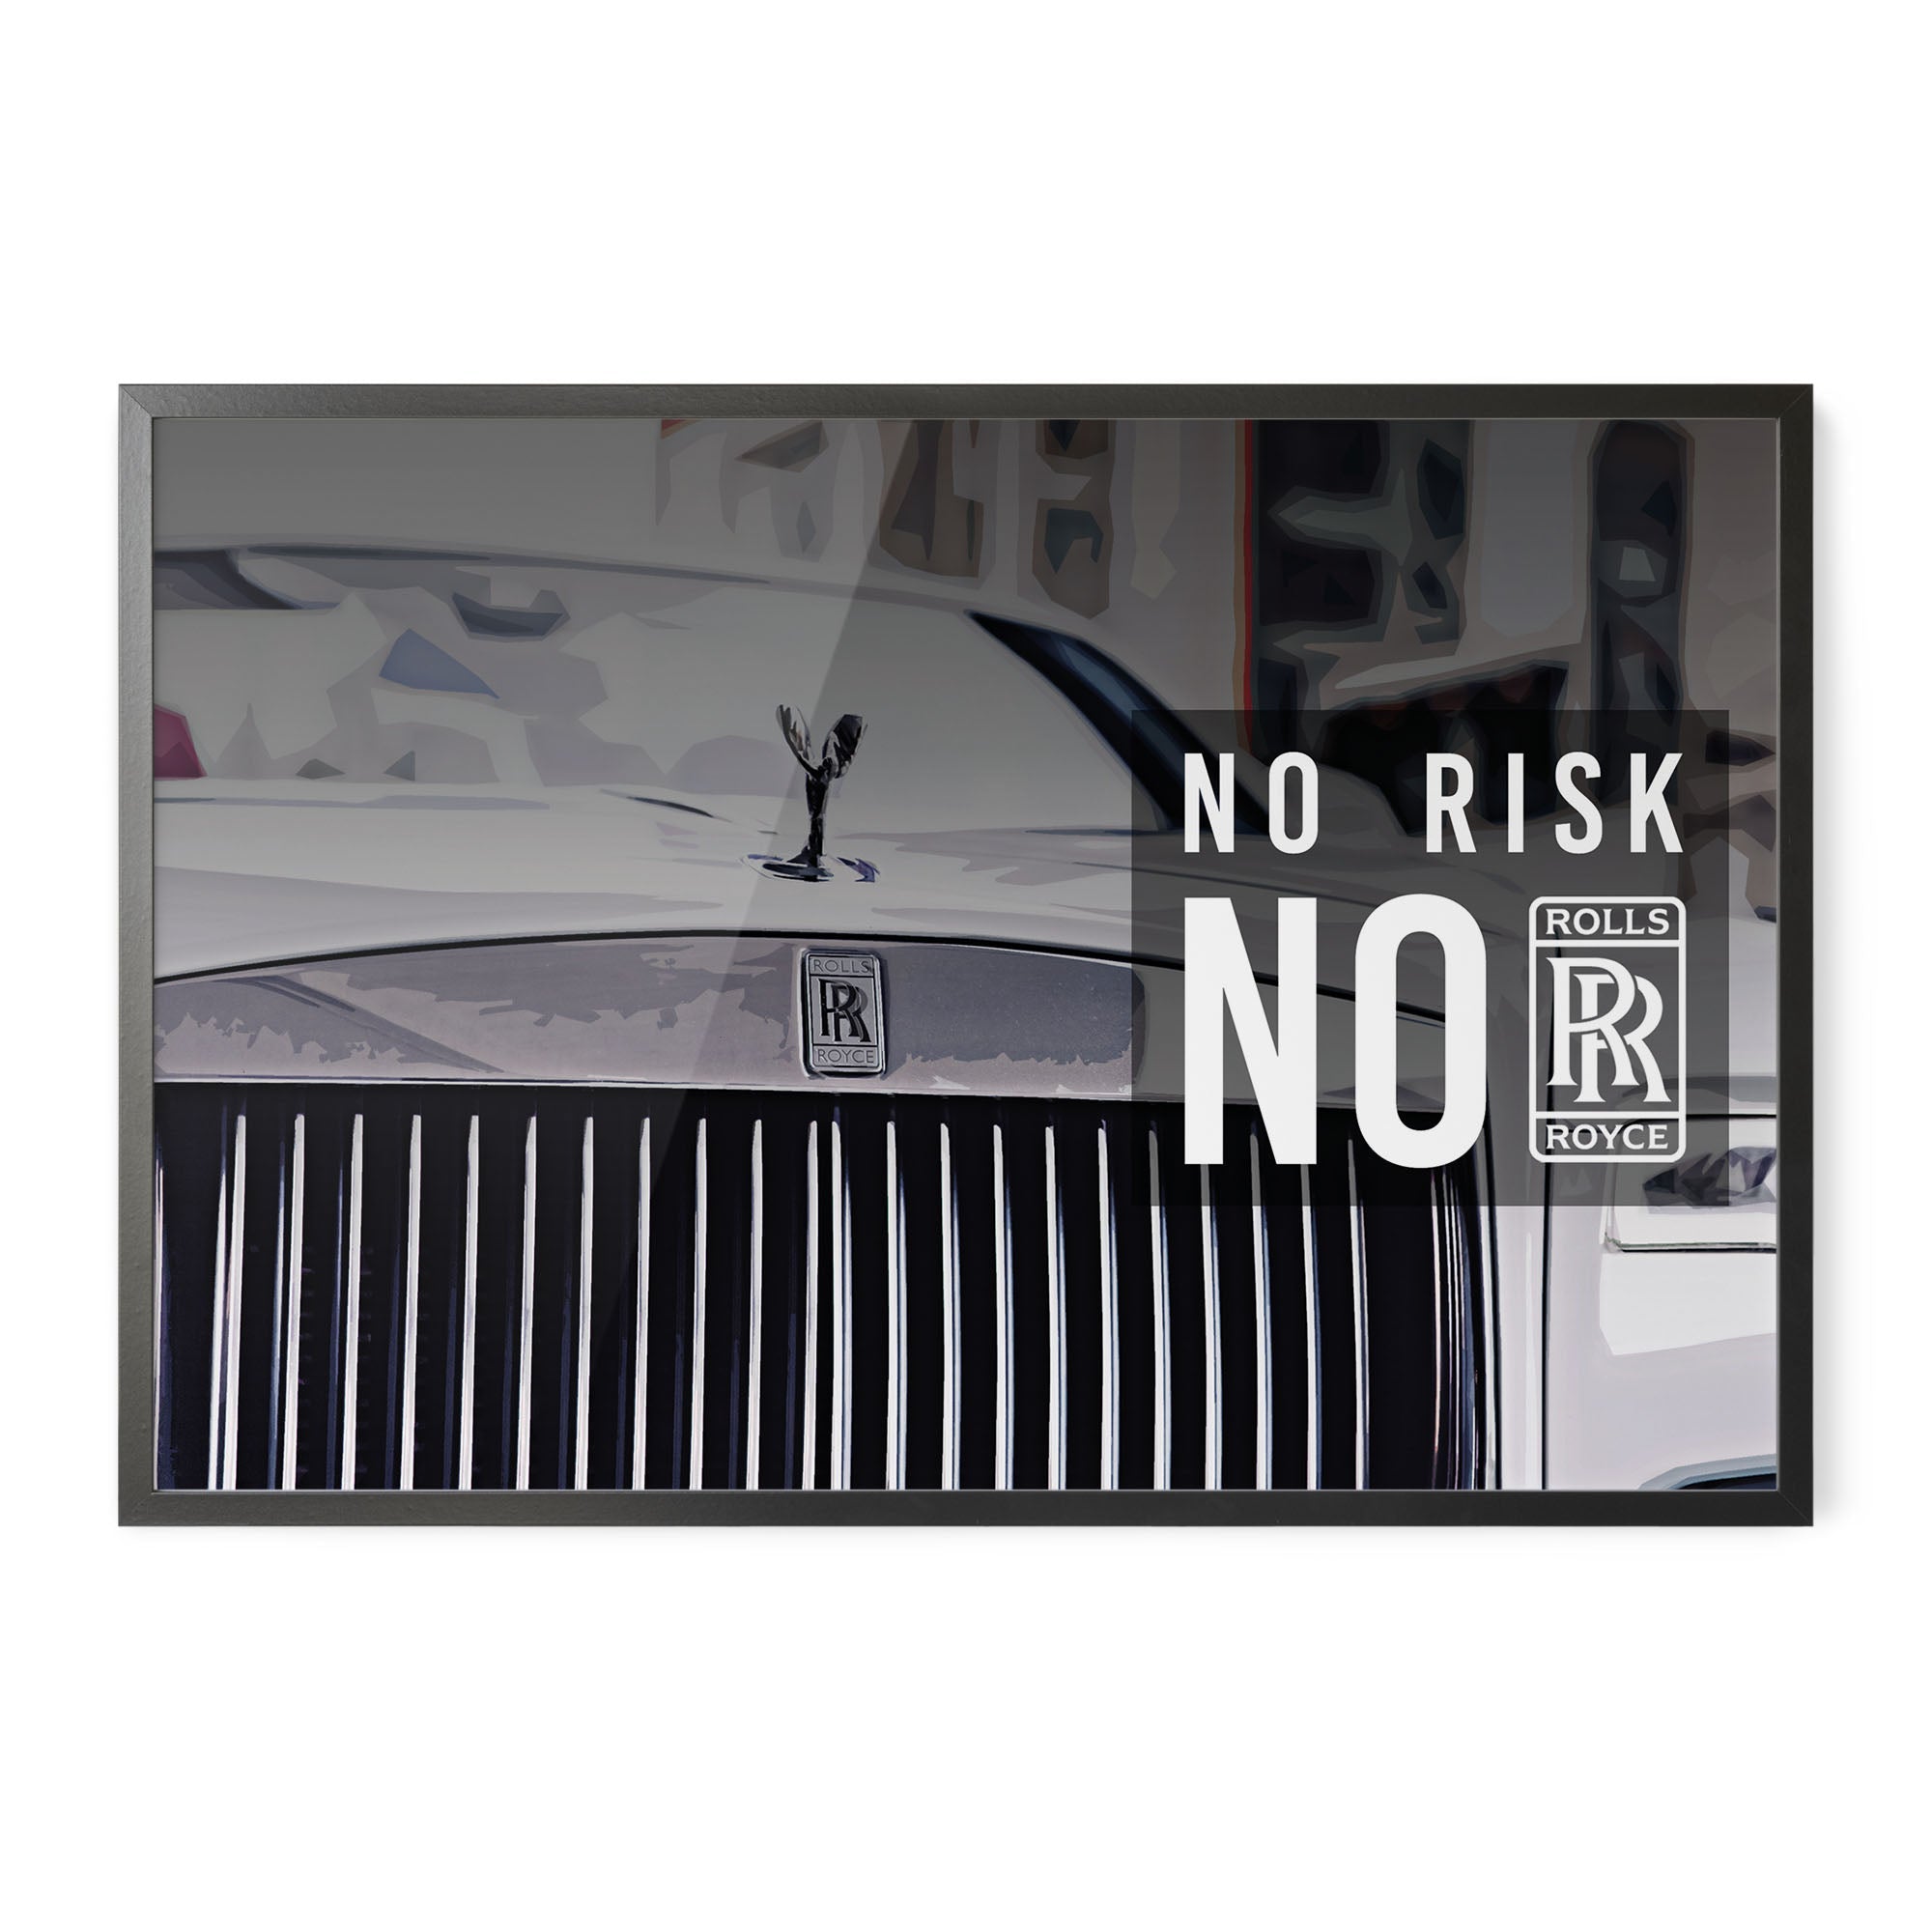 No Risk No RR